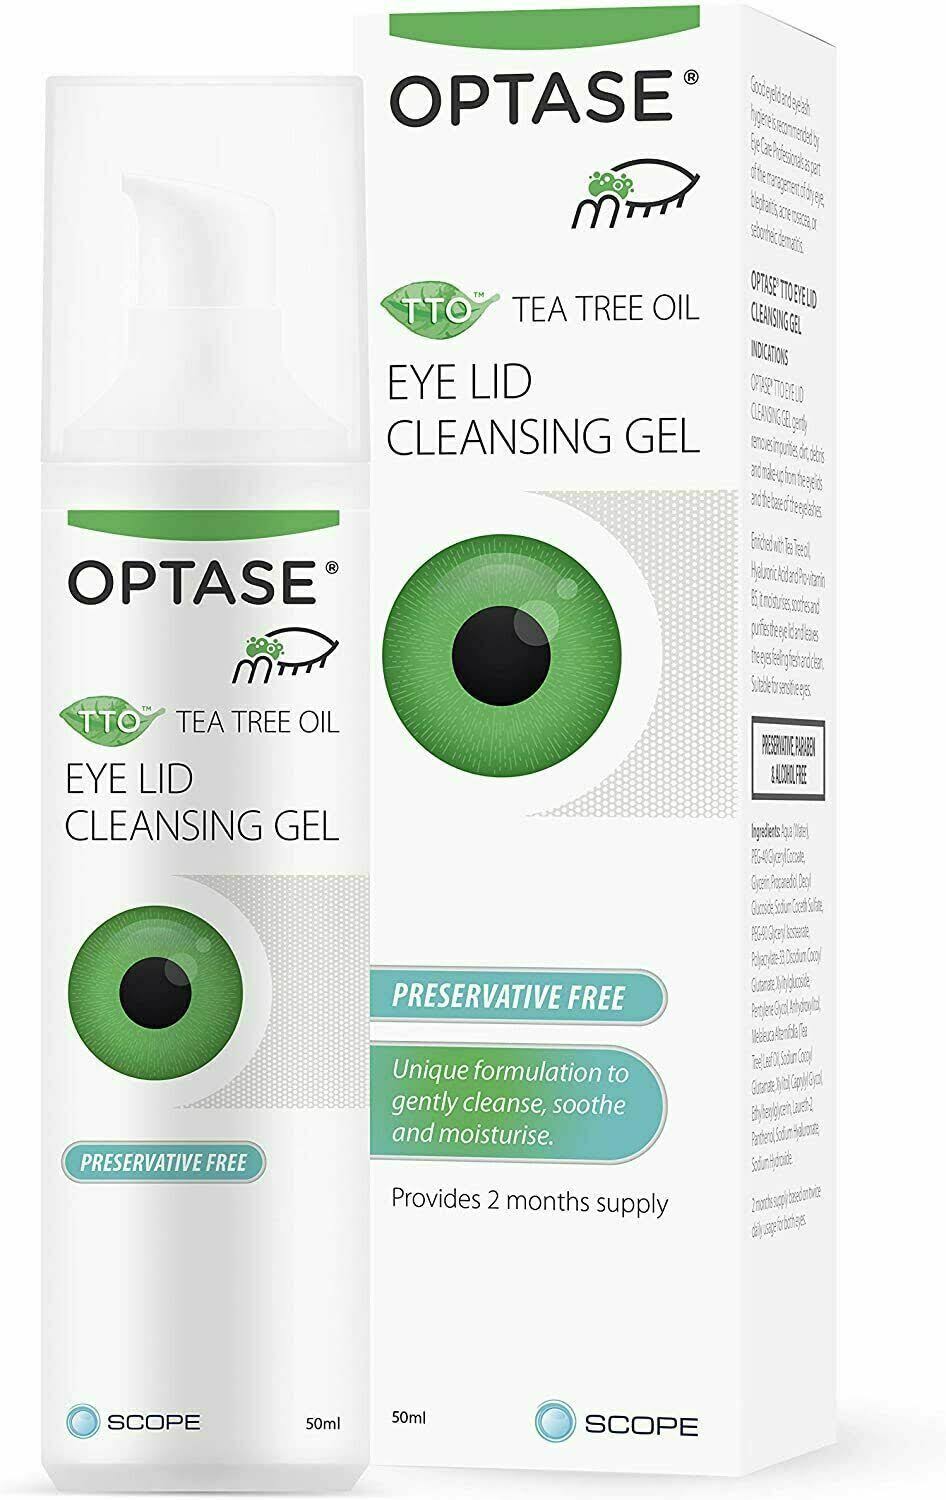 Optase TTO Tea Tree Oil Eye Lid Cleansing Gel 50ml Preservative Free